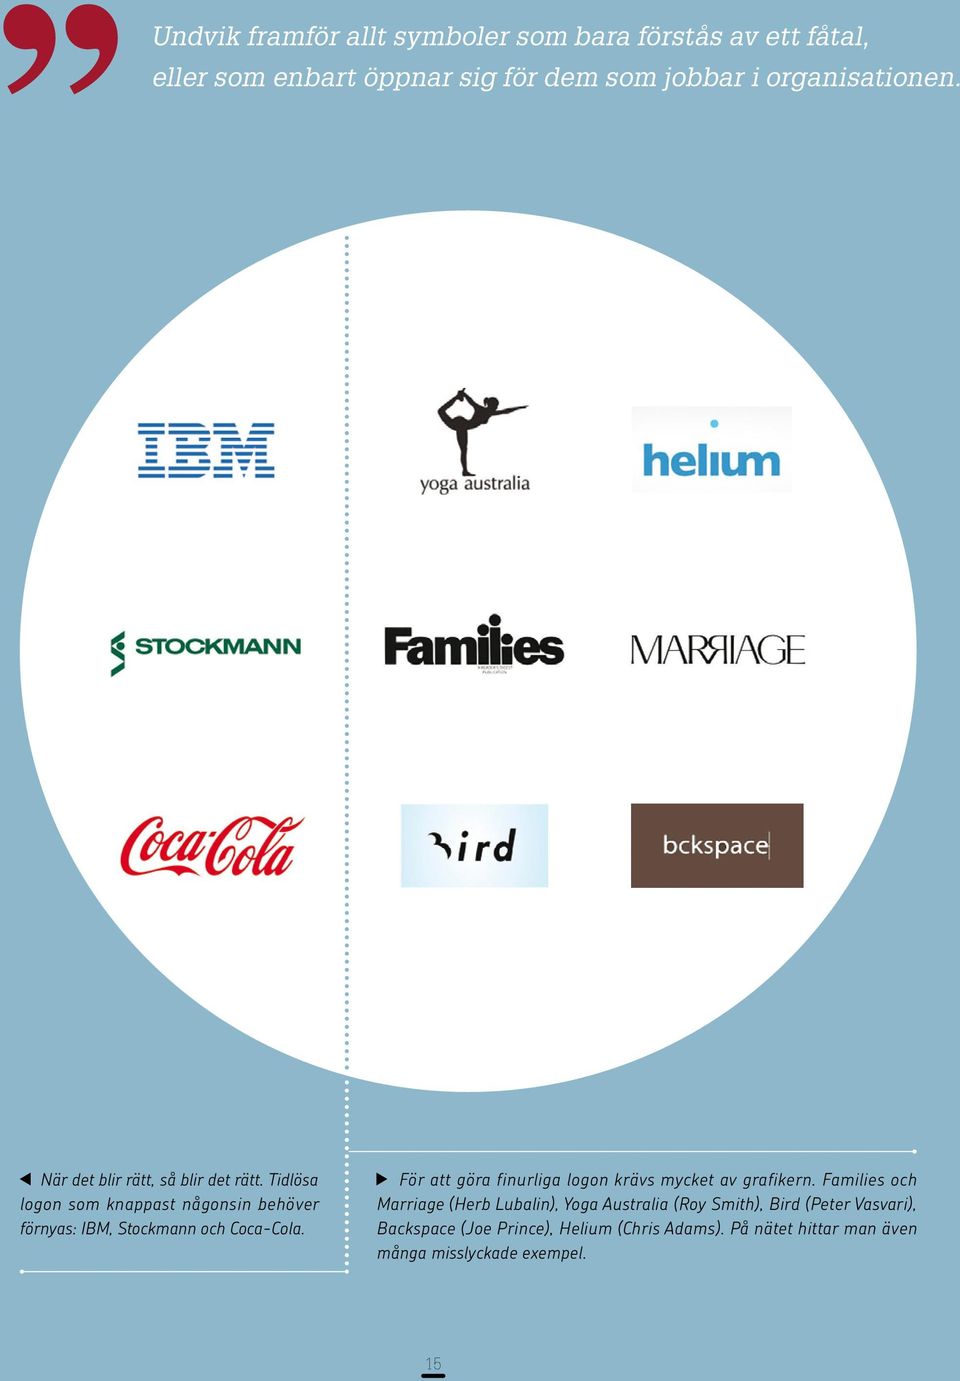 Tidlösa logon som knappast någonsin behöver förnyas: IBM, Stockmann och Coca-Cola.